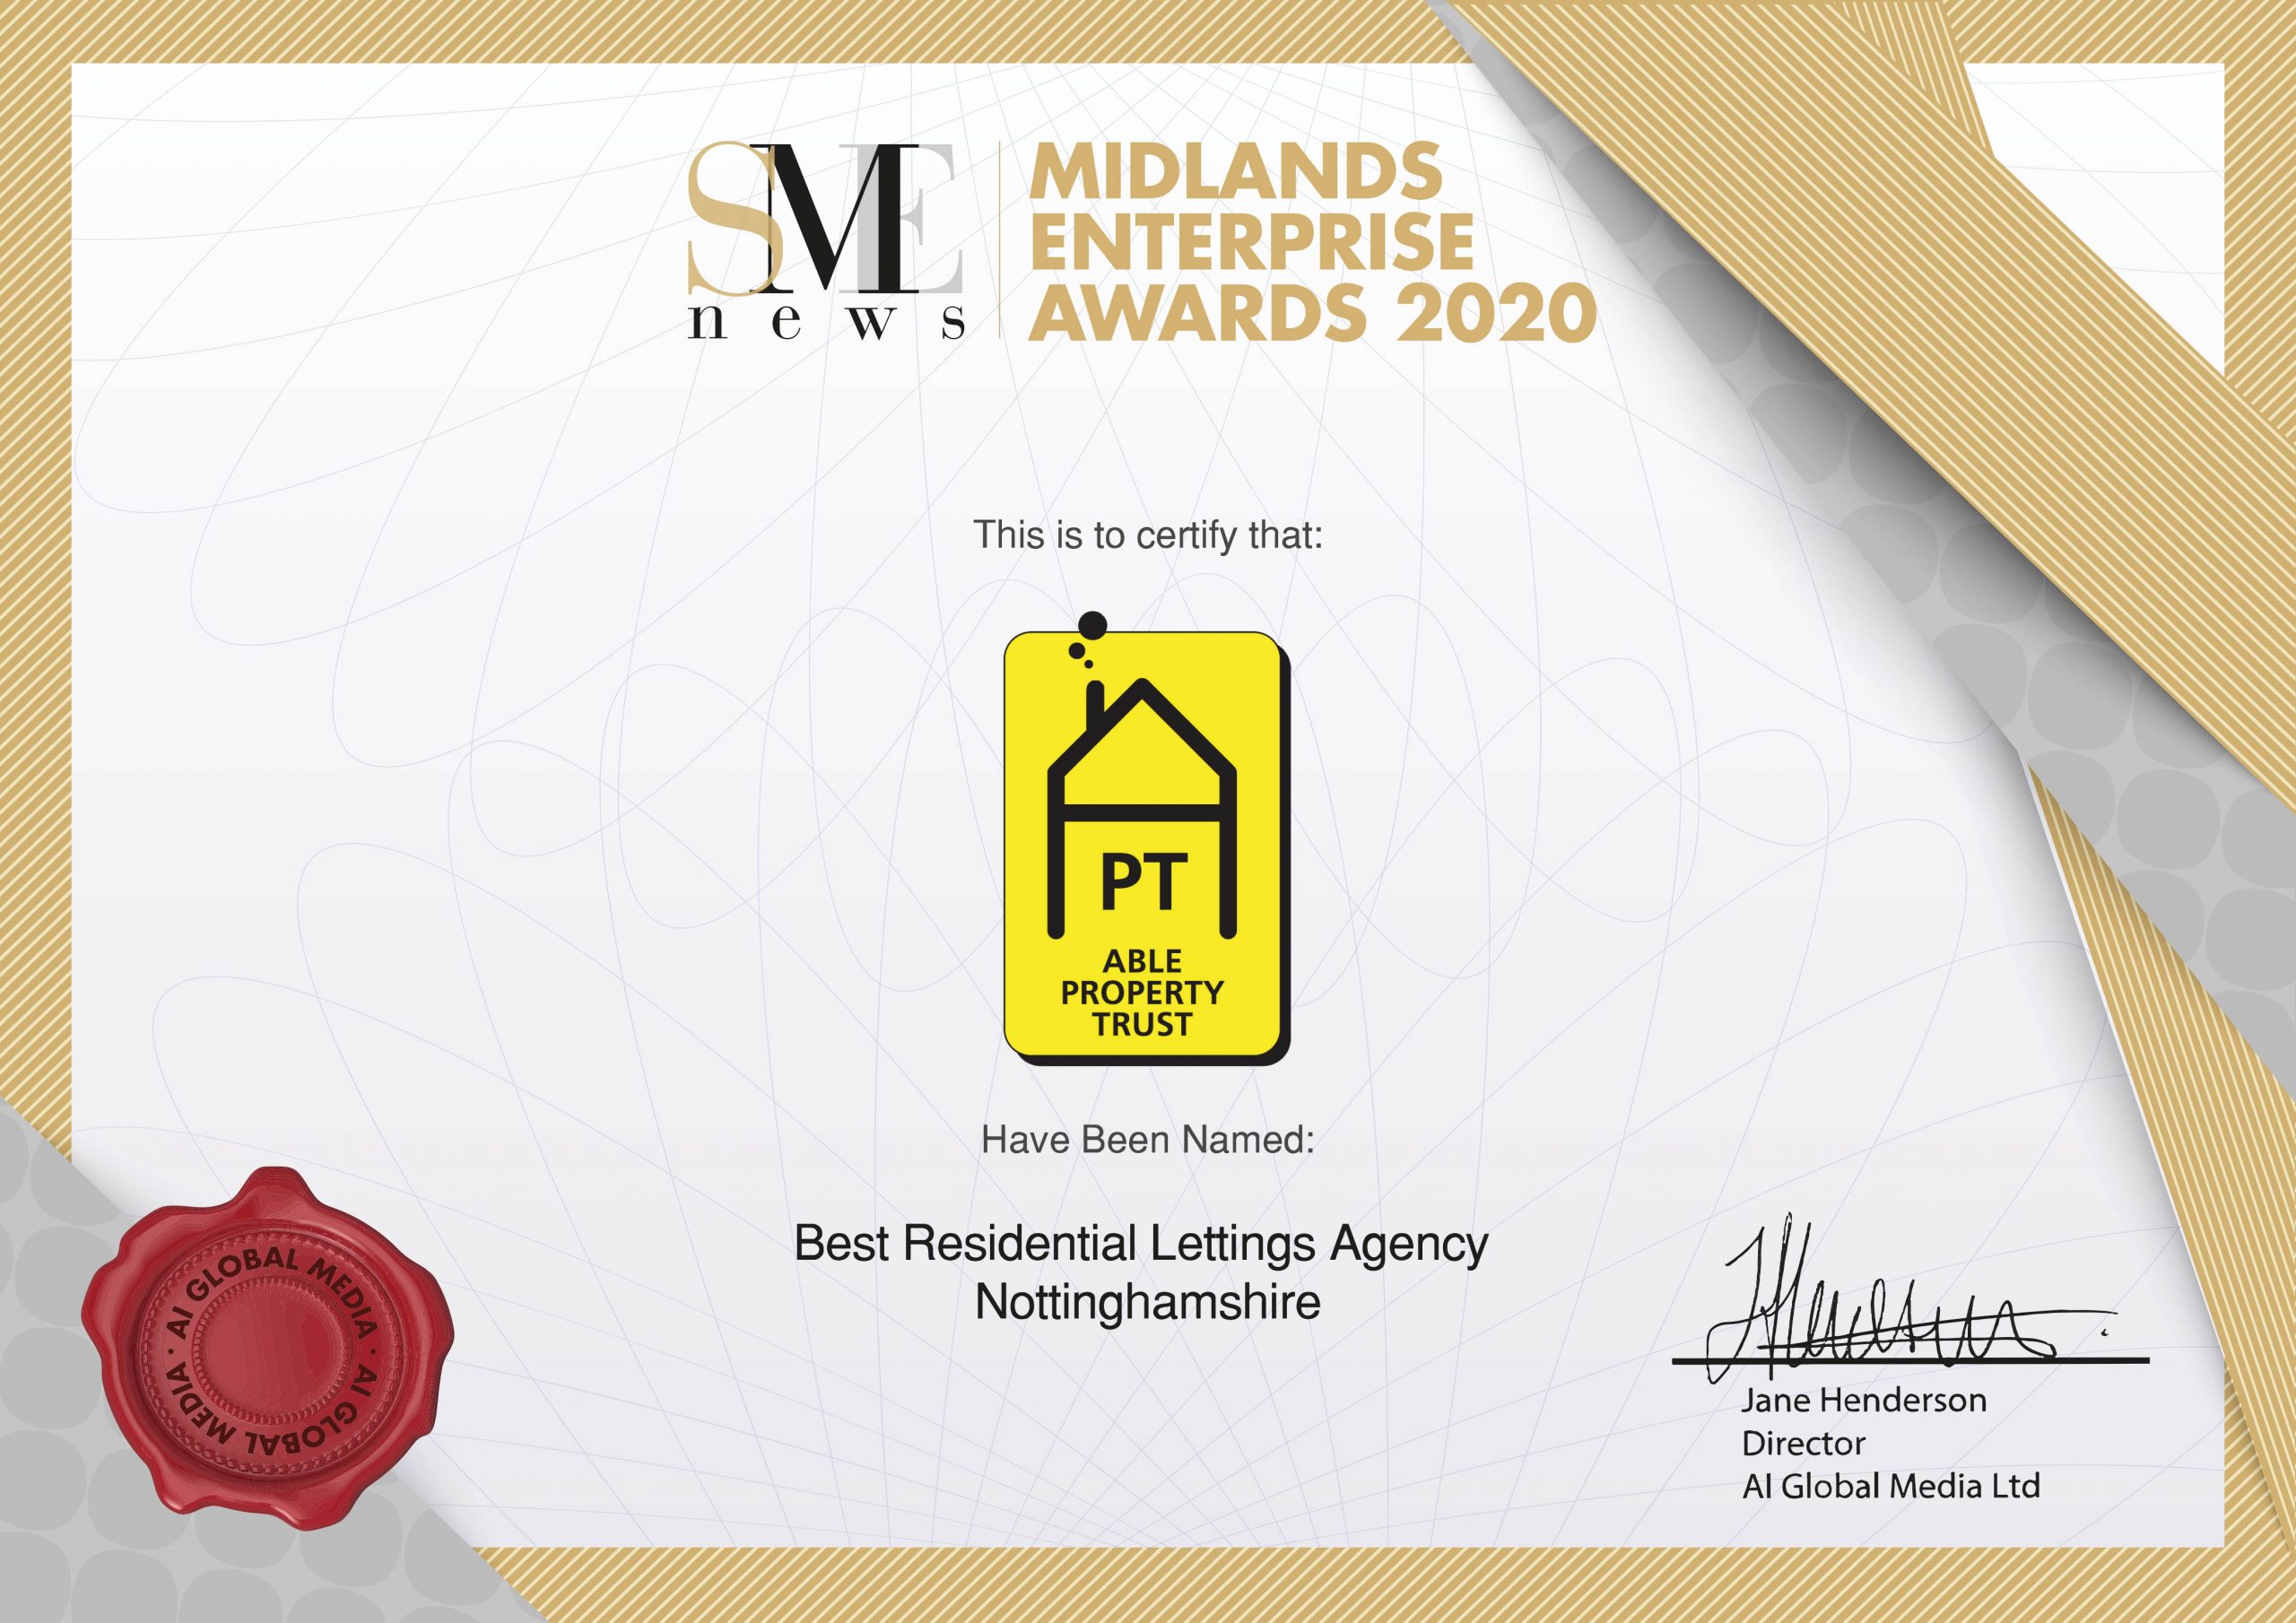 Midlands Enterprise Awards 2020 Best Residential Lettings Agency winner